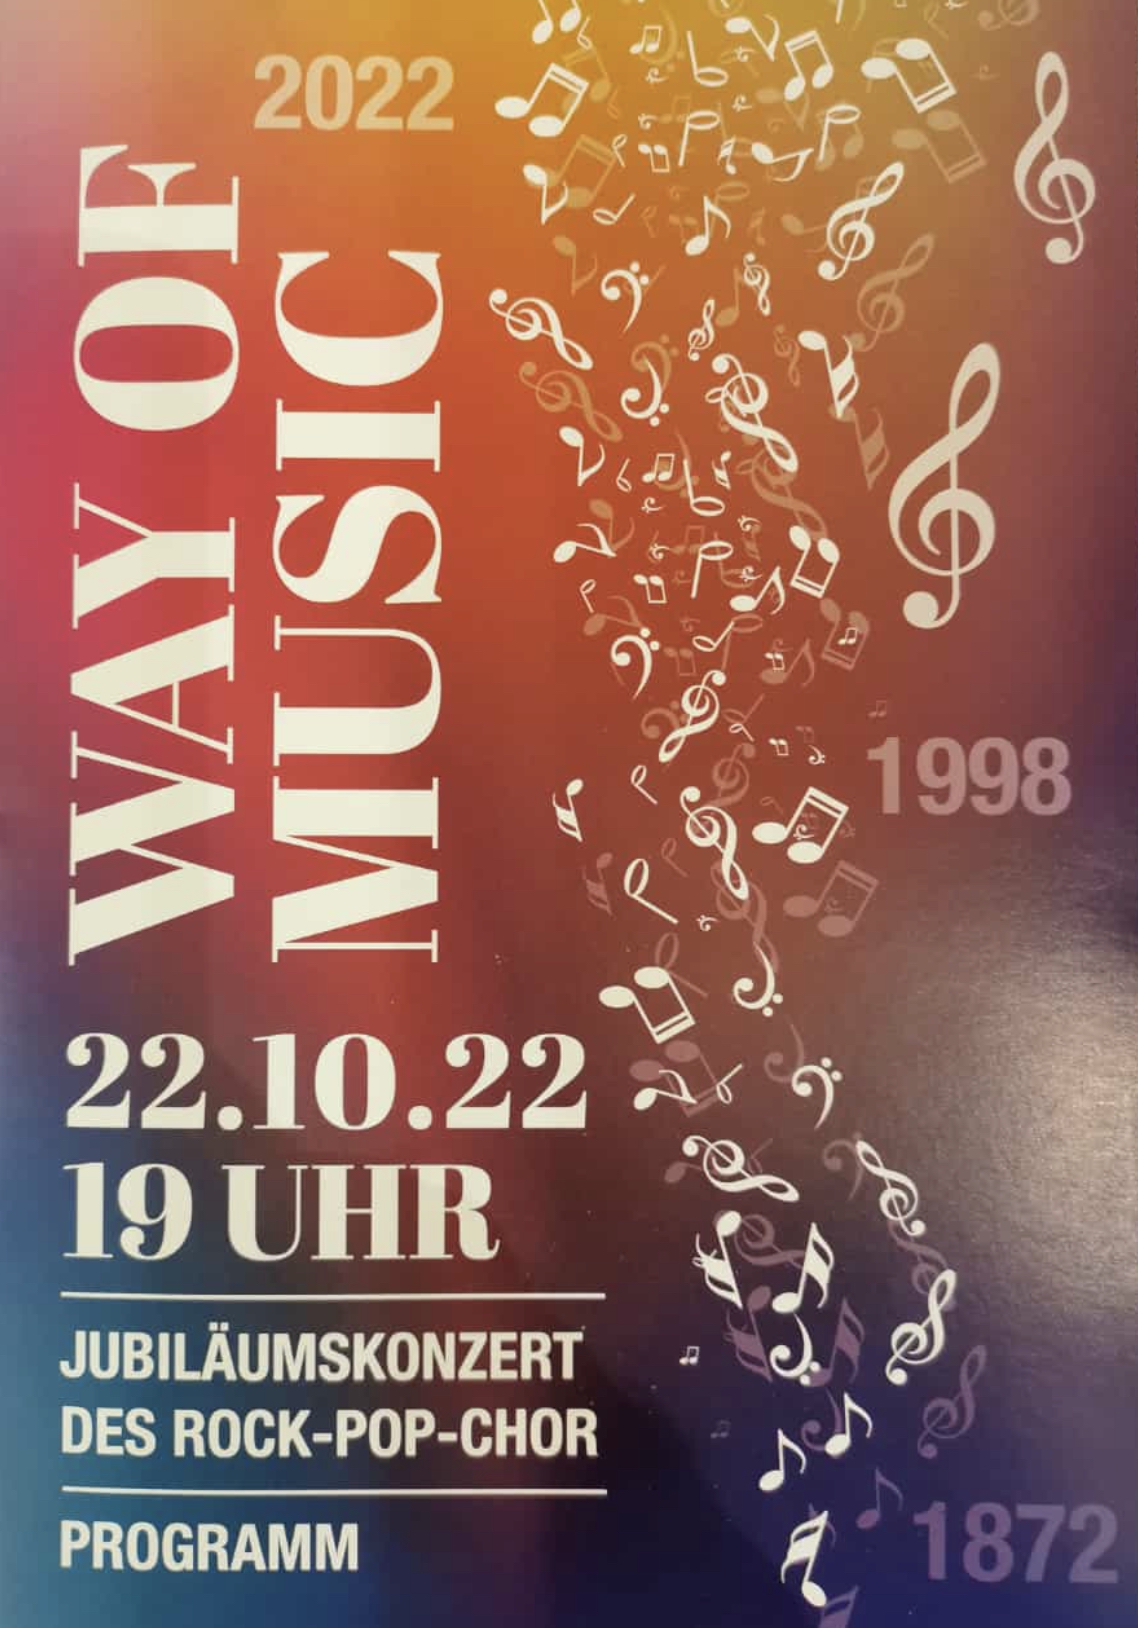 Jubiläumskonzert "Way of music"